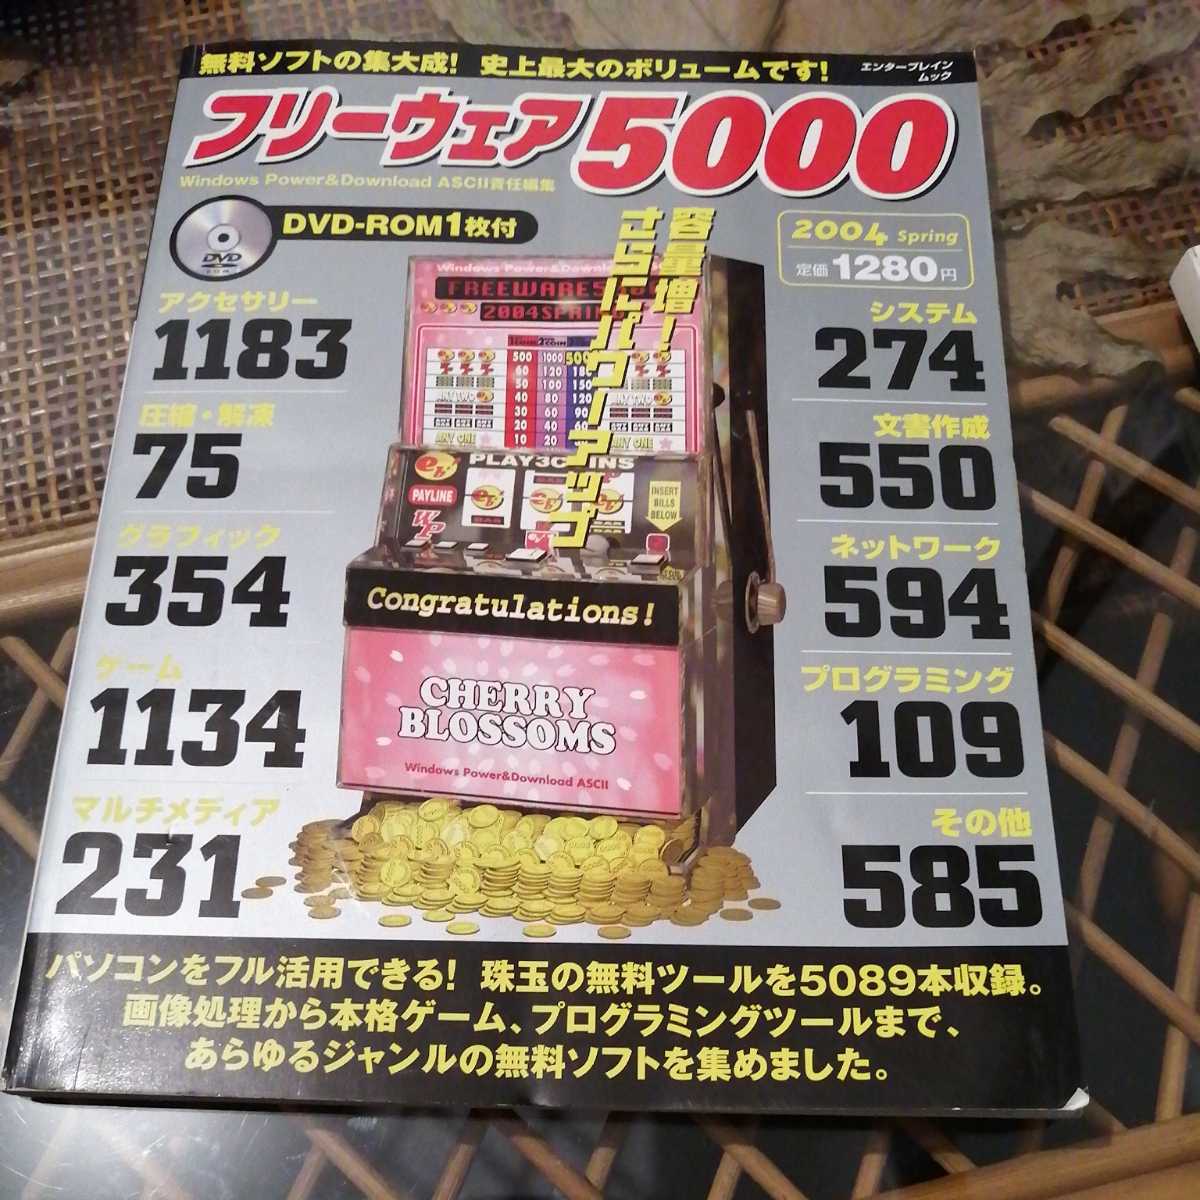 ☆DVD無し 最高級のスーパー フリーウェア5000 2004 エンターブレインムック☆ ランキング第1位 spring